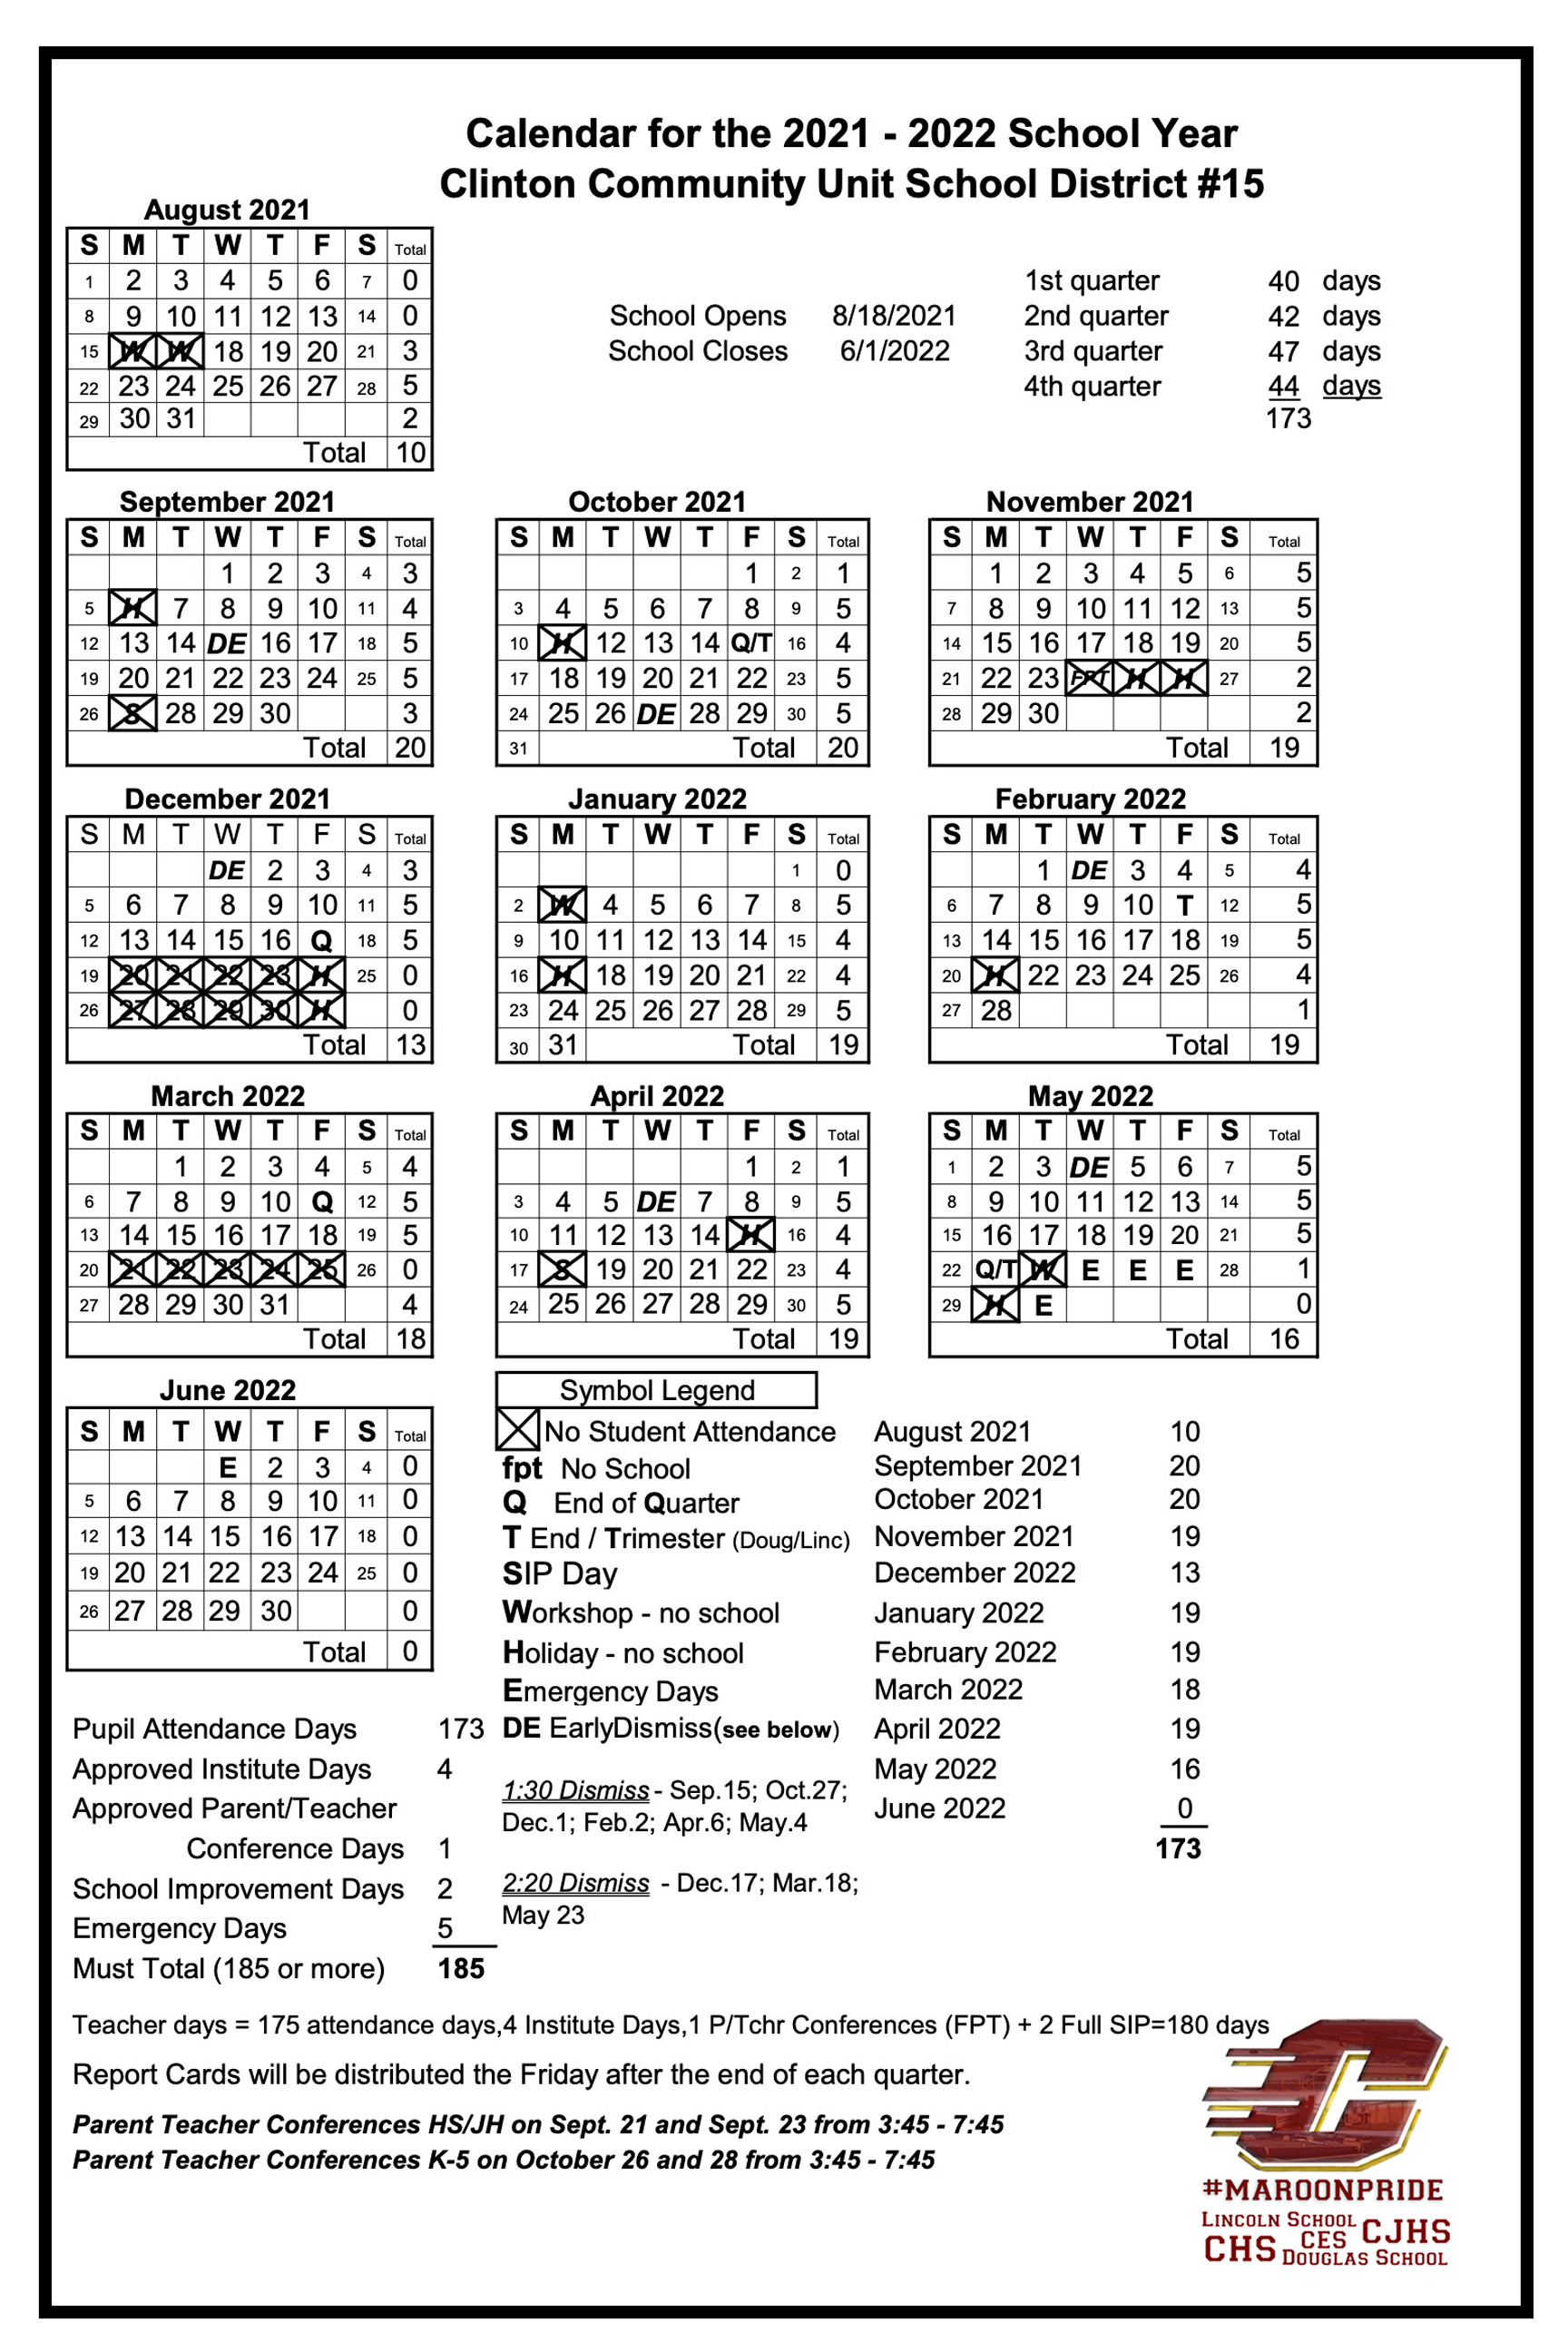 School Calendar | Clinton CUSD #15